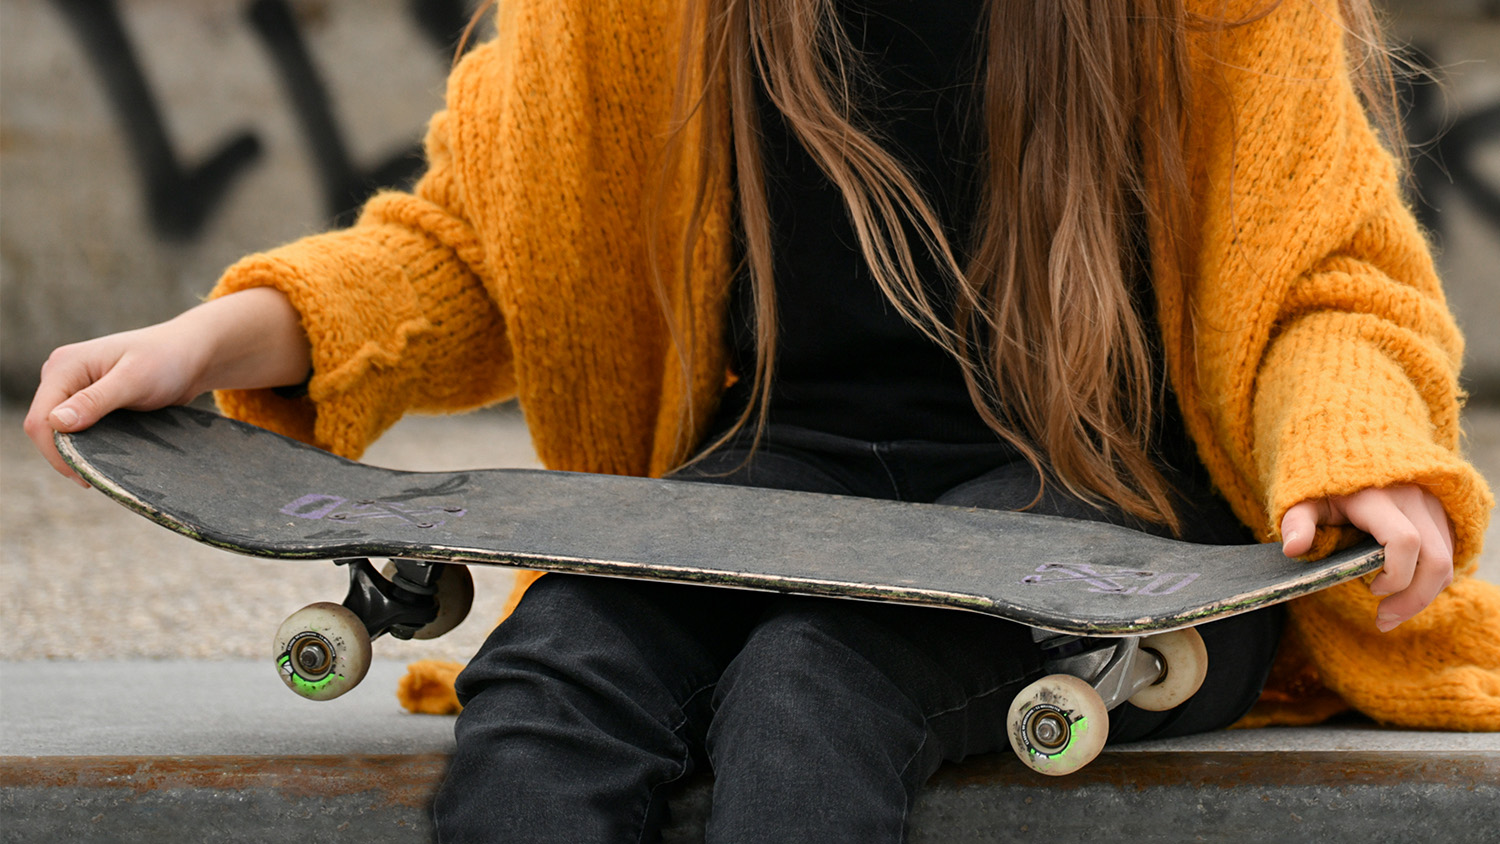 Girl holding a skateboard.